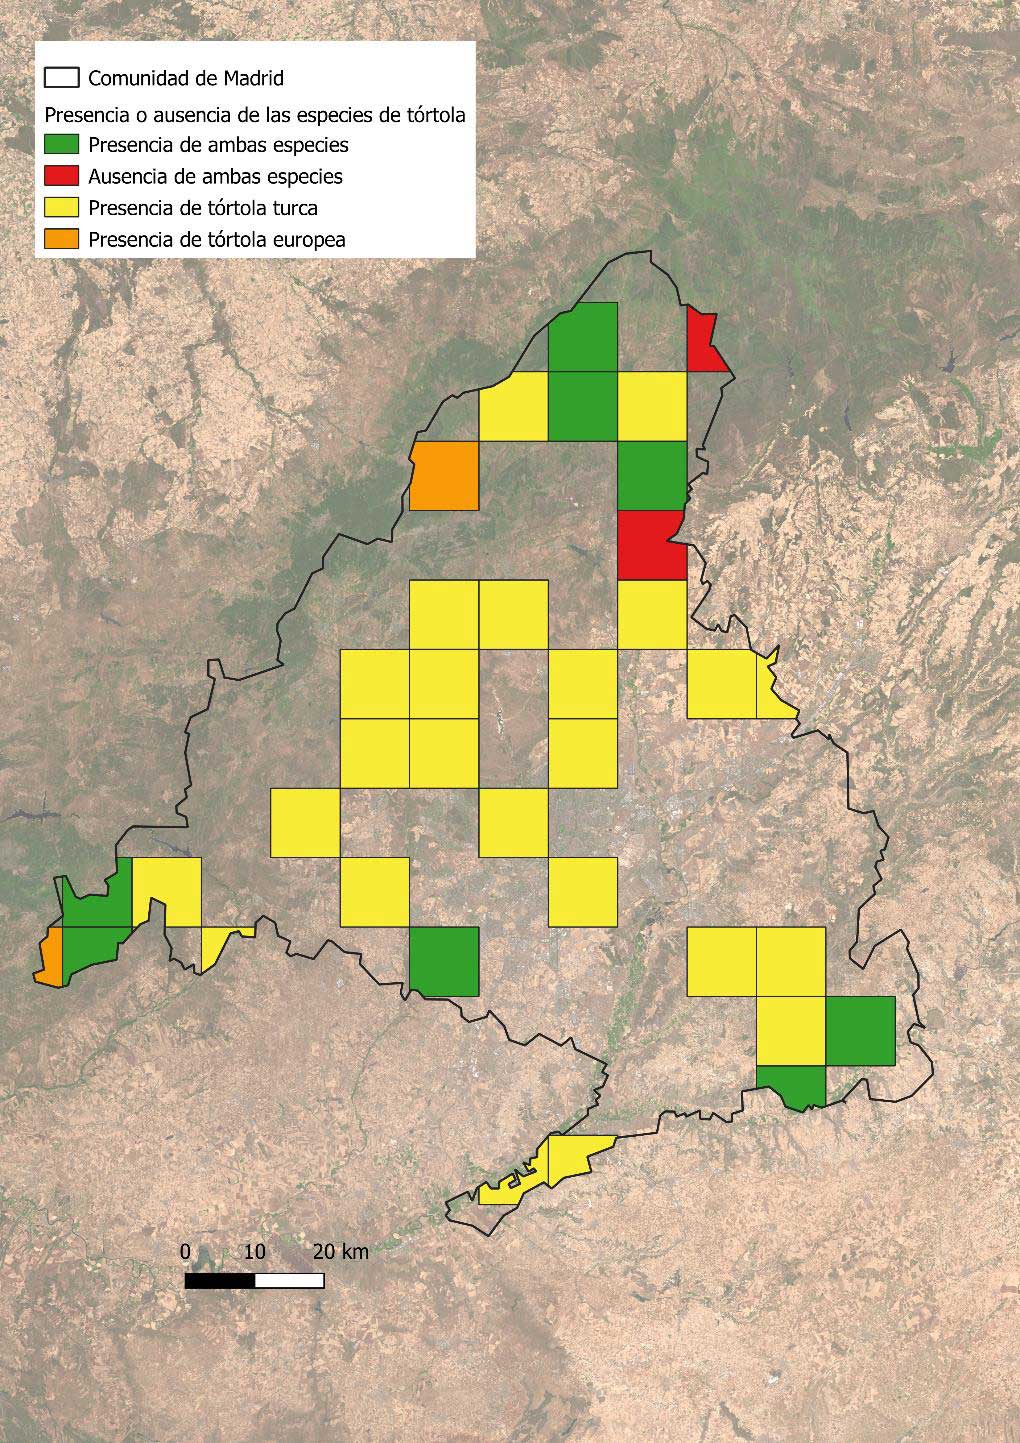 Mapa de presencia de tórtola europea y turca en la Comunidad de Madrid en función de las cuadrículas muestreadas